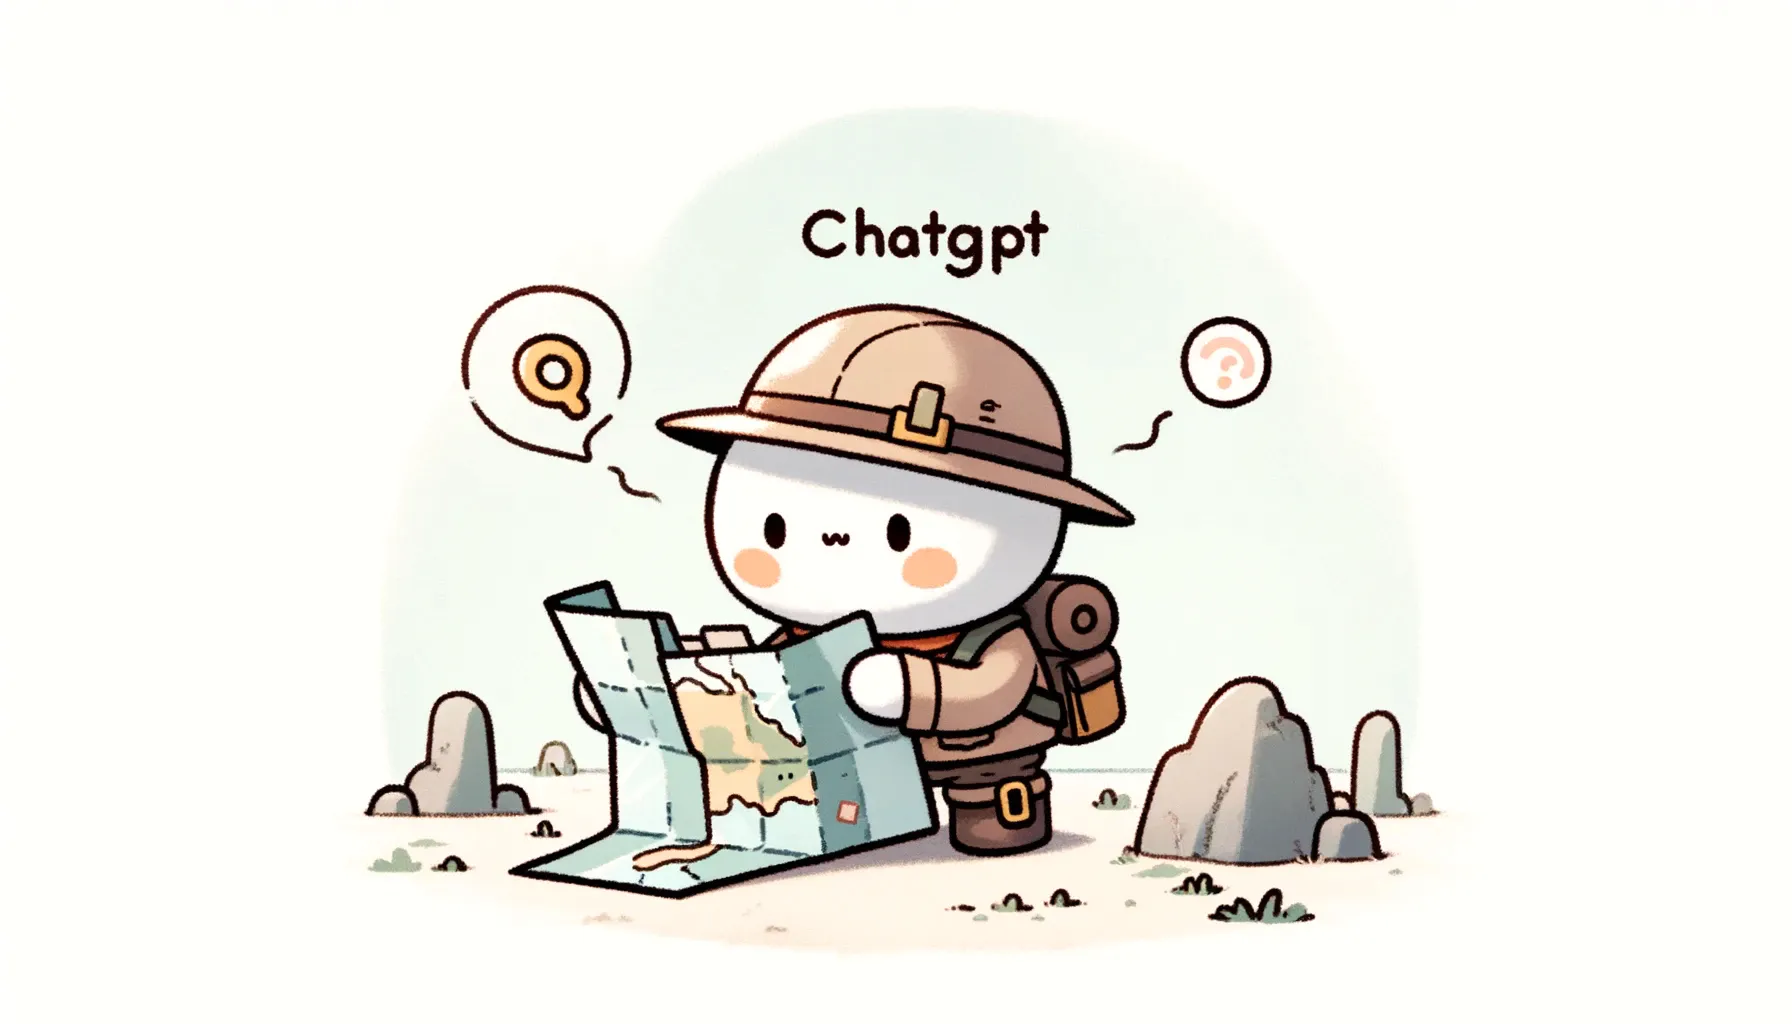 Una ilustraciÃ³n de un explorador, representando un chatbot, consultando un mapa